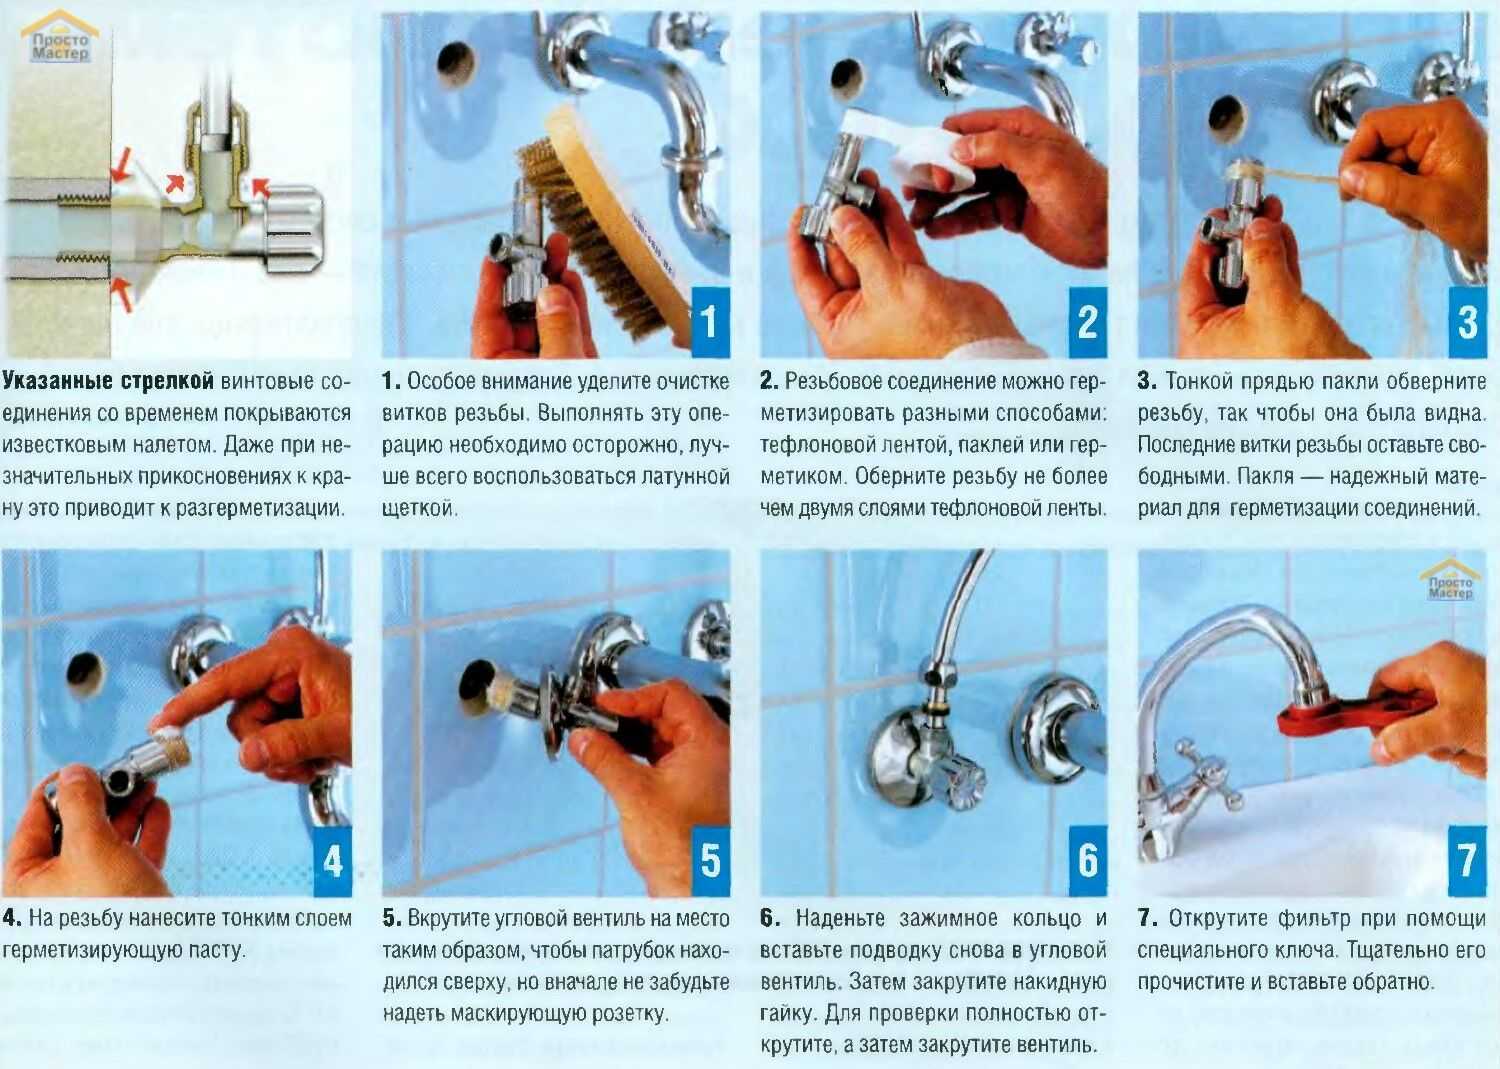 Как заменить смеситель в ванной: пошаговая инструкция по замене своими руками